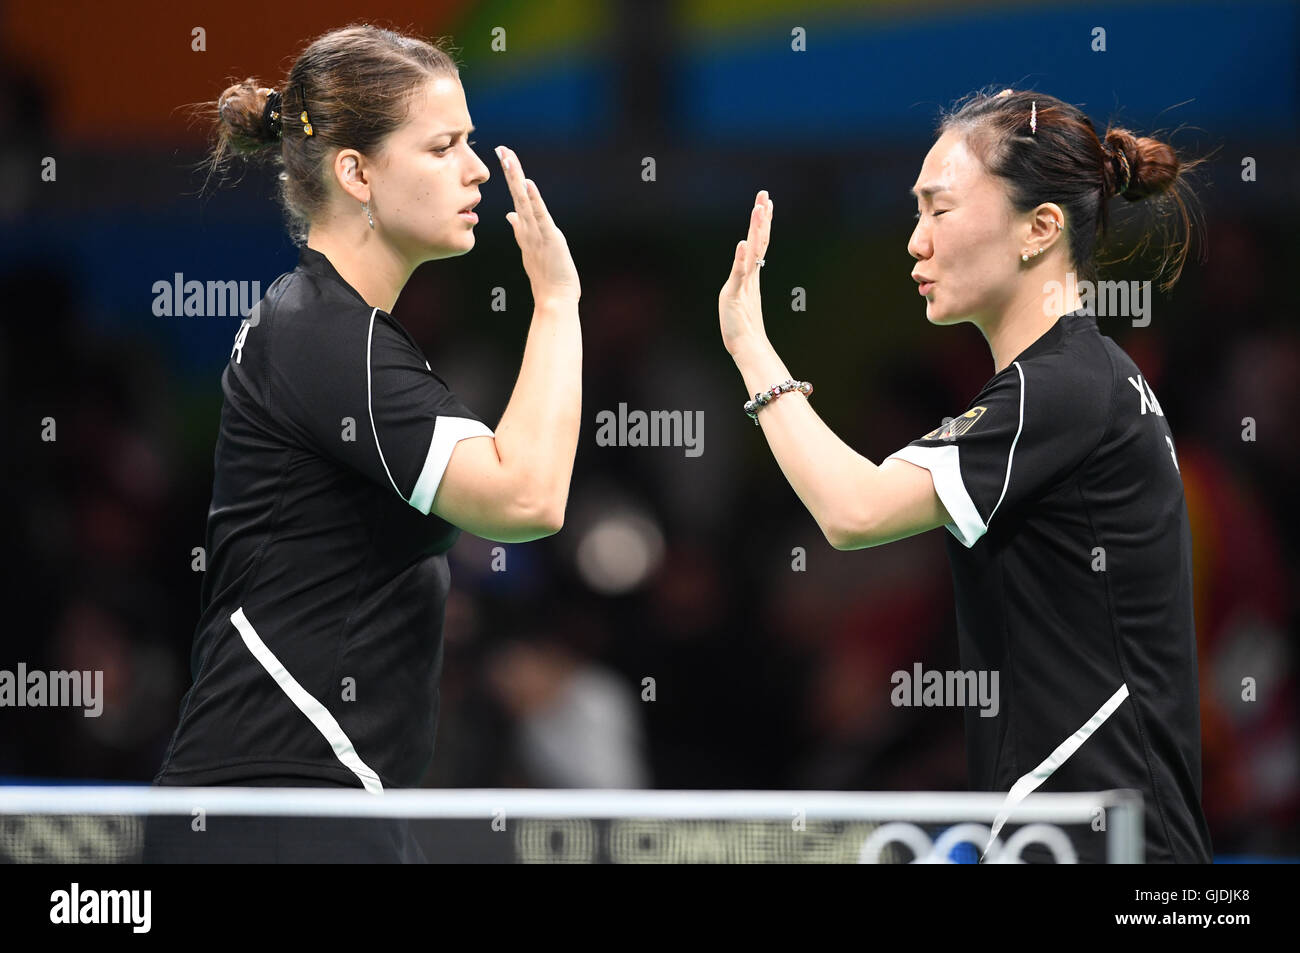 Table tennis star Fukuhara warms Chinese hearts at 